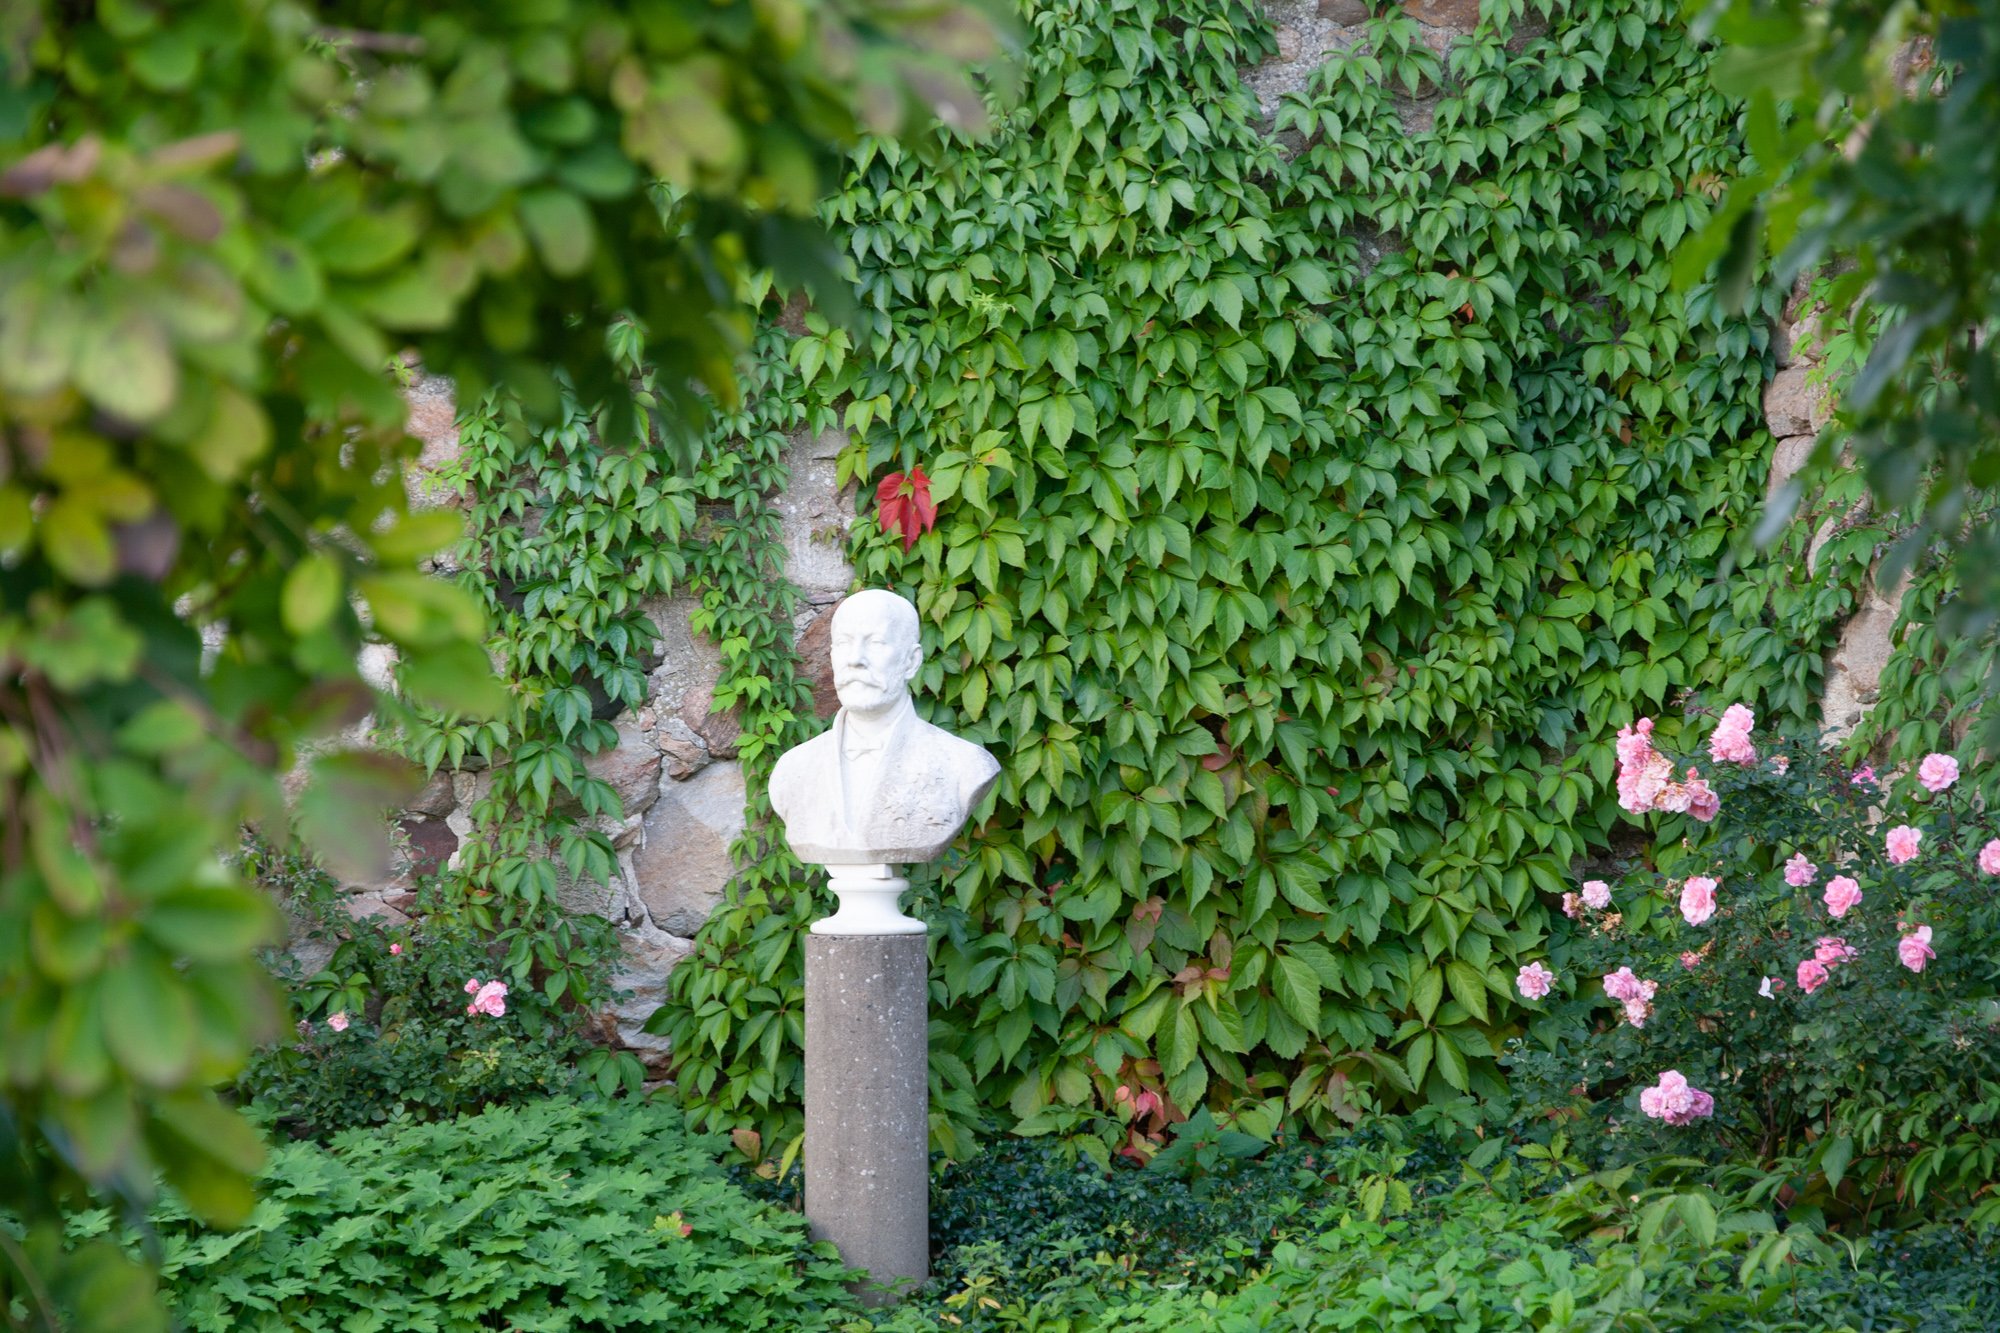  Im Gedenkhof, können Sie die Rose ‘Stenchen’, umgenannt in ‘Bosjökloster’ finden. Sie blüht hier seit 1908.  